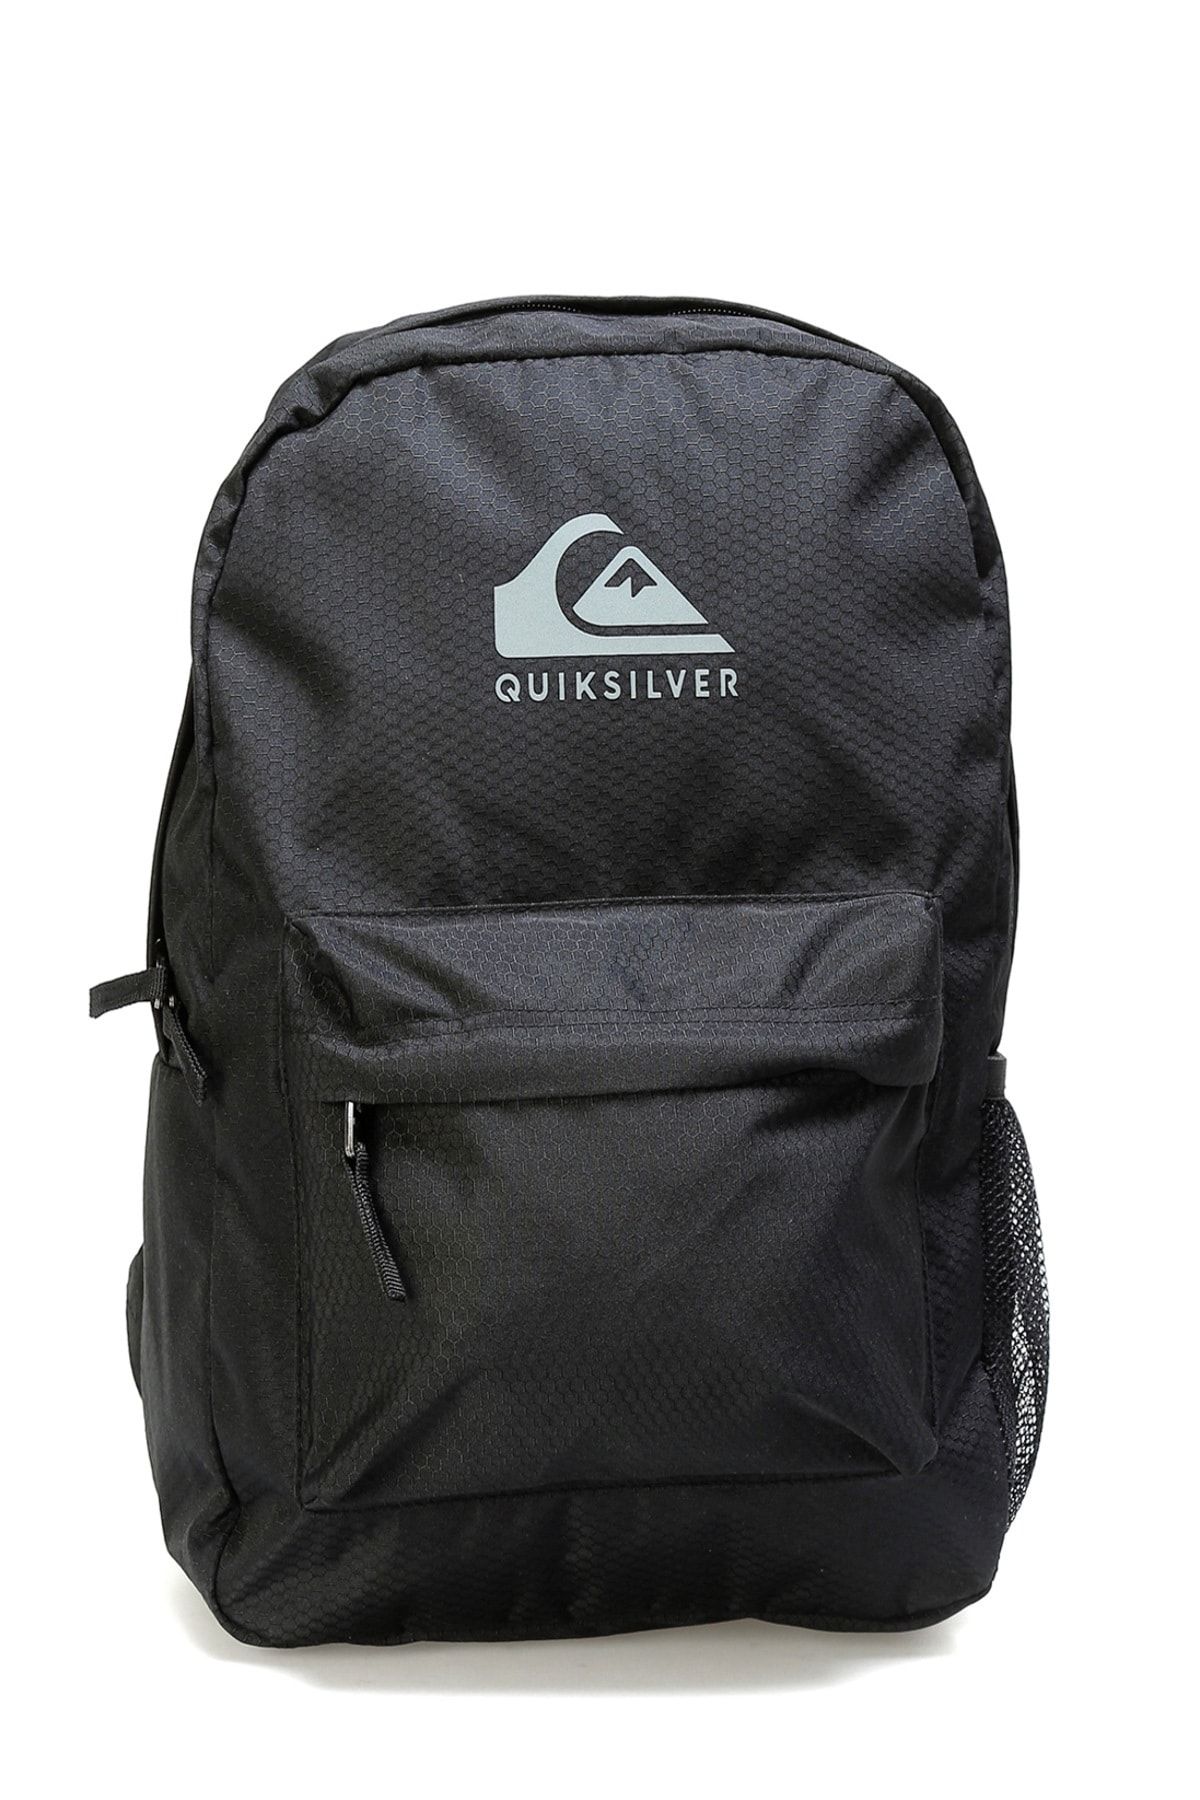 Quiksilver Back2school Backpack Erkek Sırt Çantası Fiyatı, Yorumları